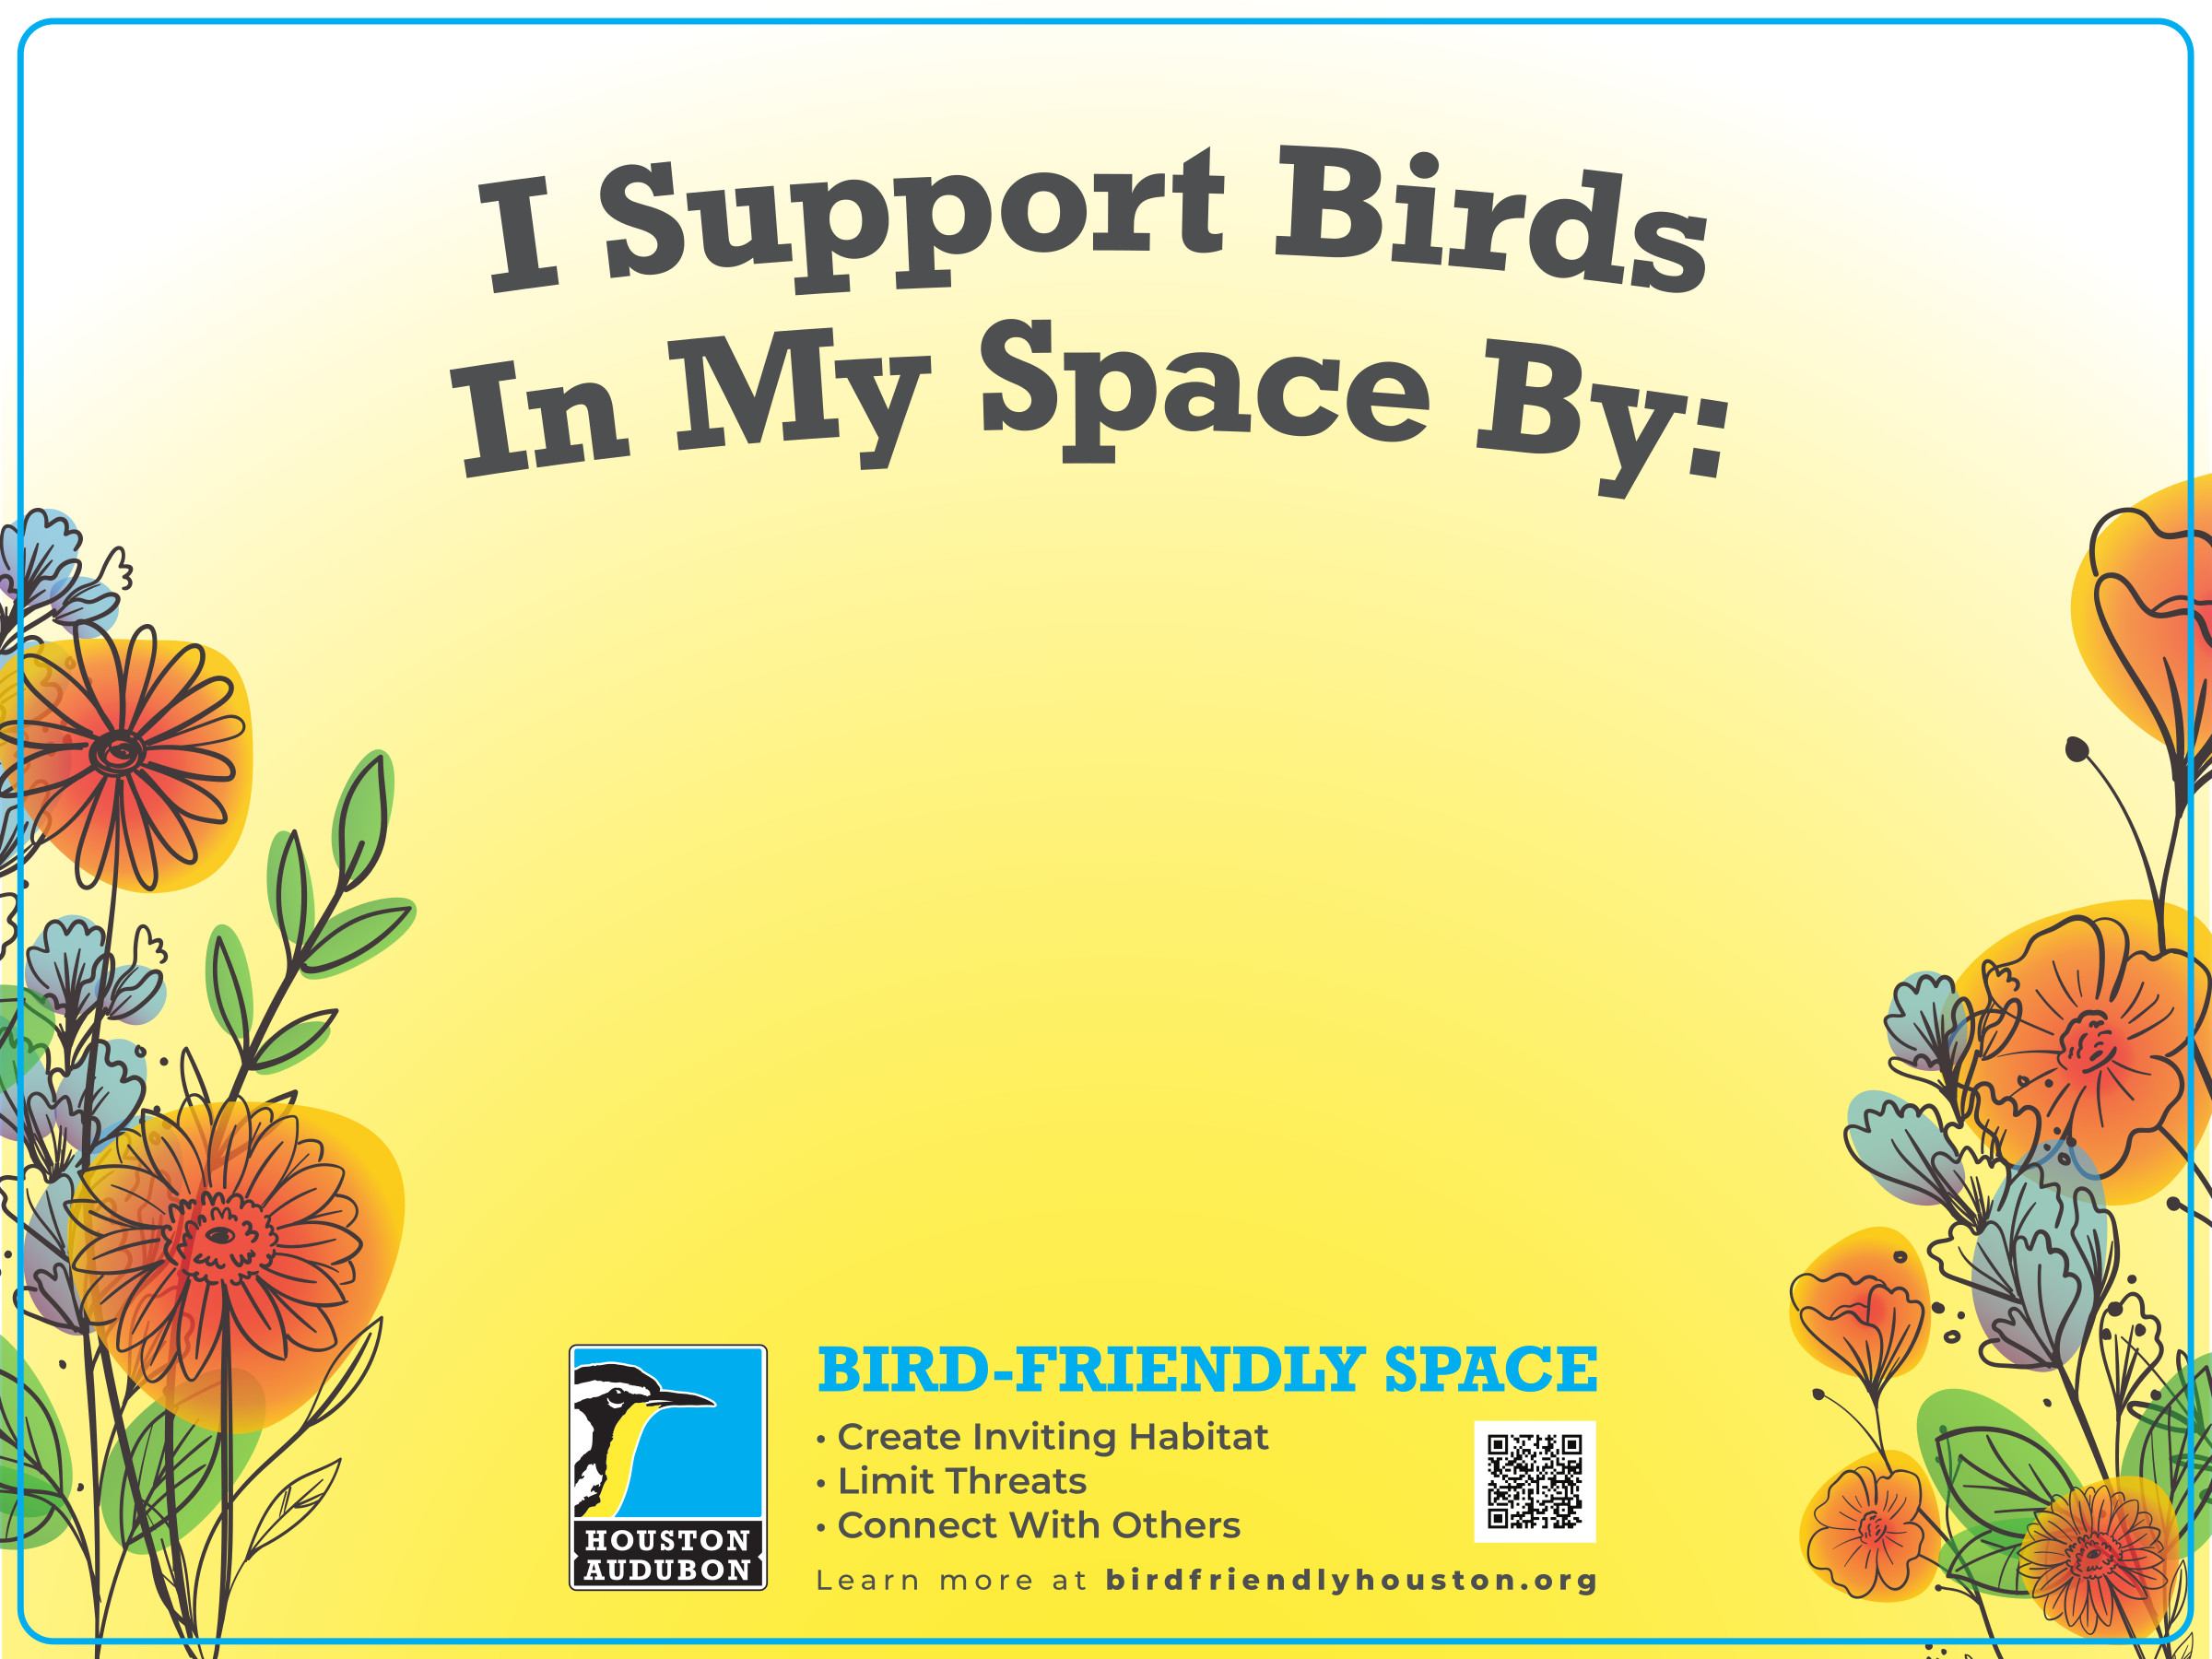 https://www.birdfriendlyhouston.org/wp-content/uploads/2017/01/Bird-Friendly-Spaces-Yard-Sign-18x24-2022-02-25.jpg